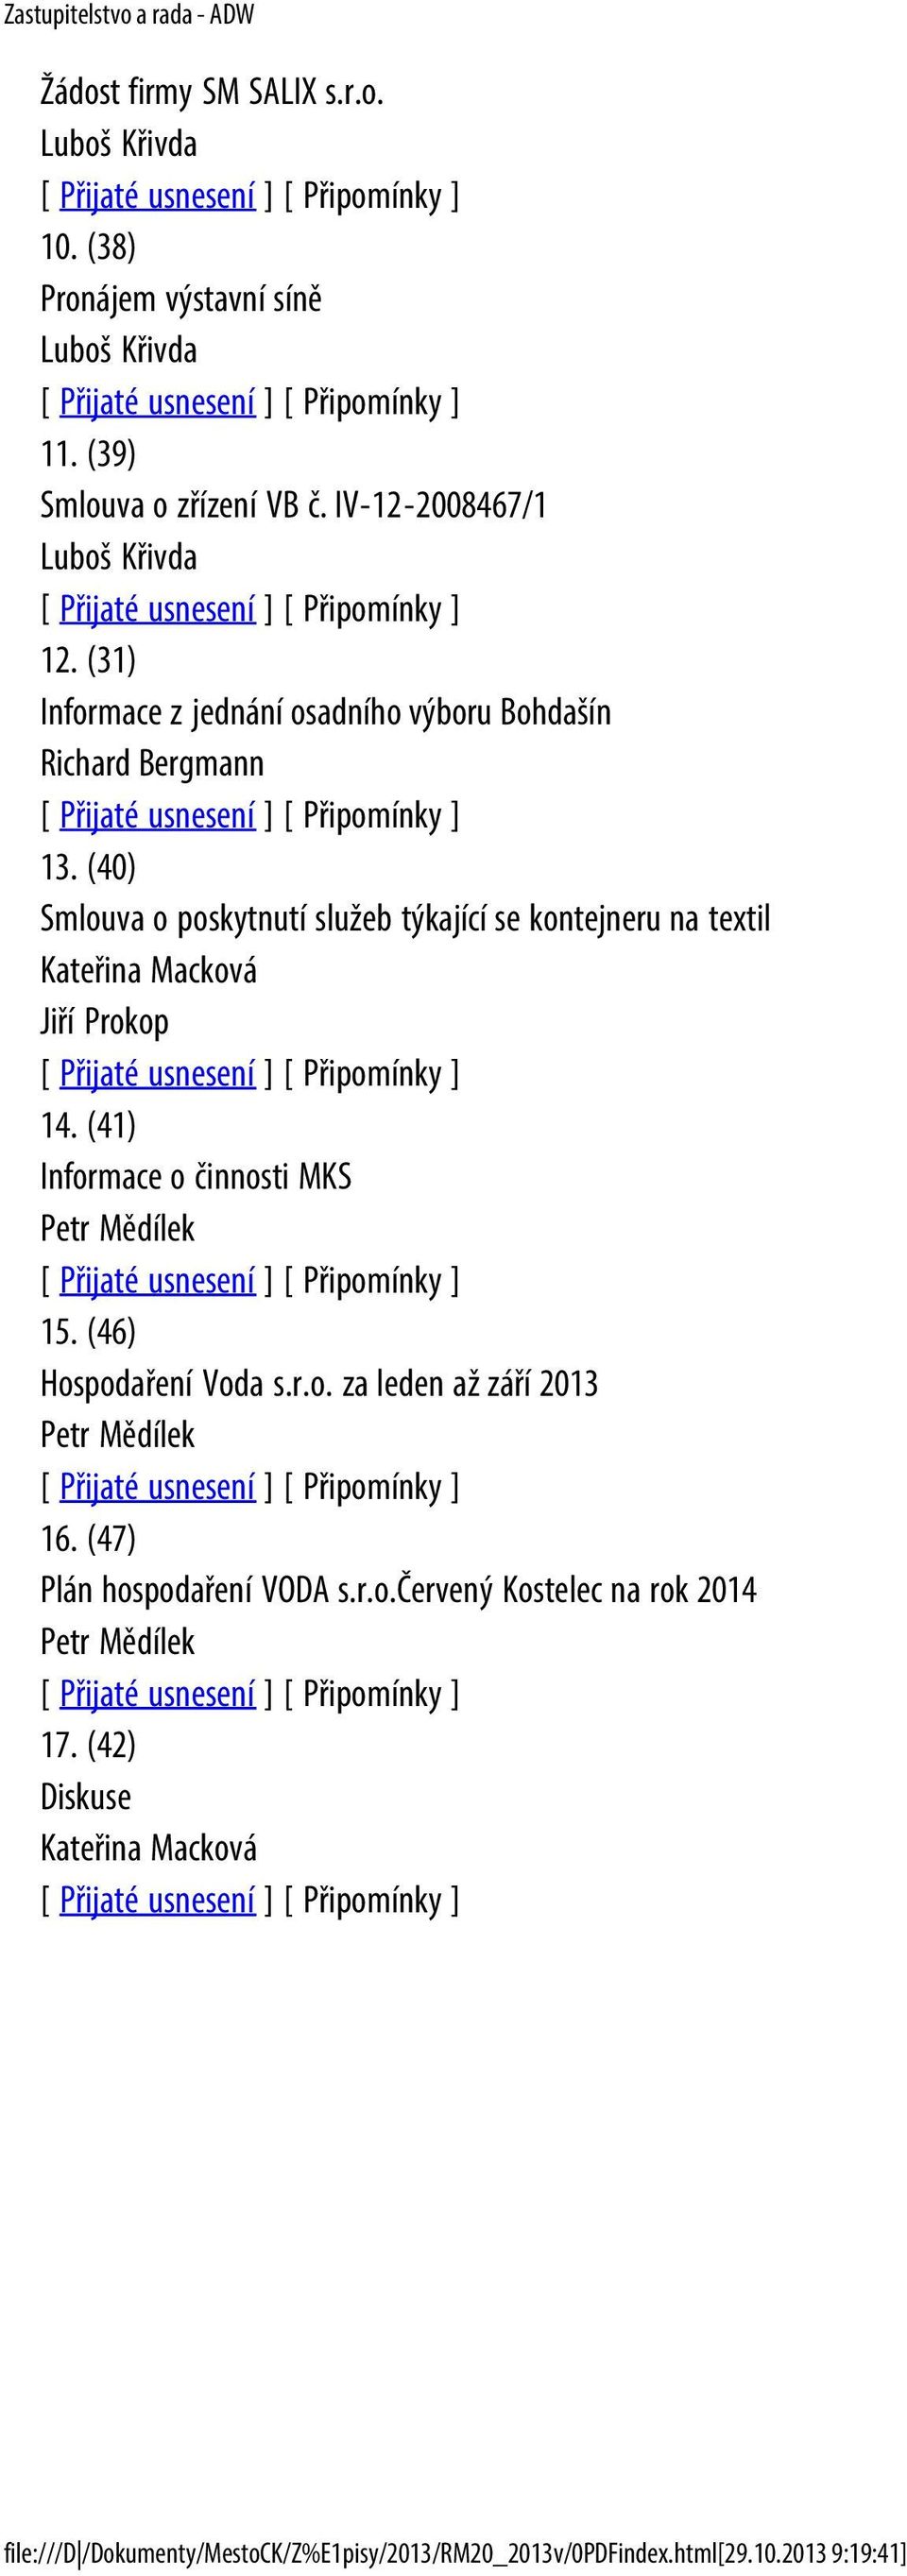 (40) Smlouva o poskytnutí služeb týkající se kontejneru na textil Kateřina Macková Jiří Prokop 14. (41) Informace o činnosti MKS 15.